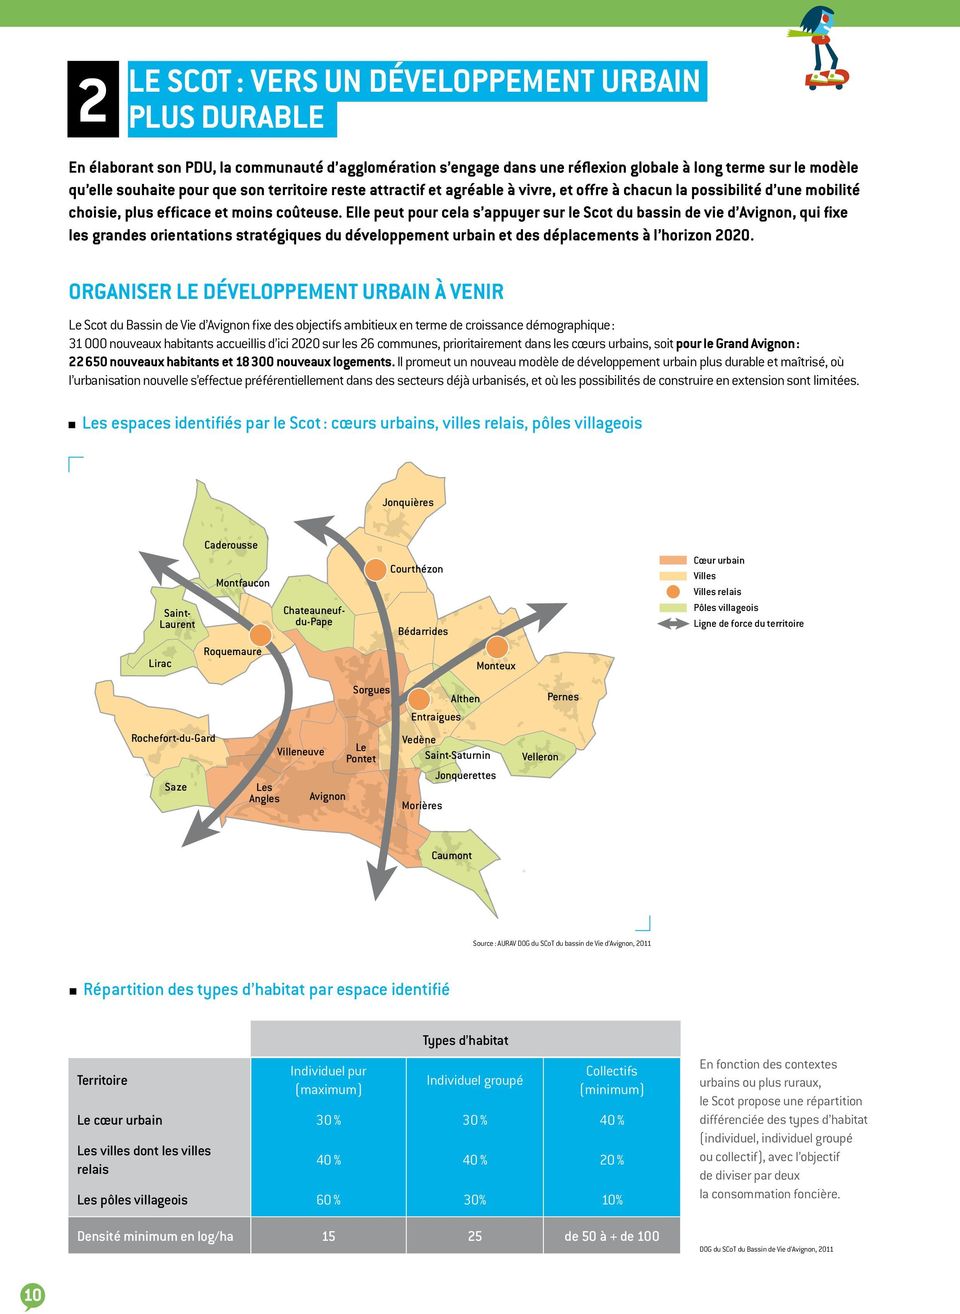 Elle peut pour cela s appuyer sur le Scot du bassin de vie d Avignon, qui fixe les grandes orientations stratégiques du développement urbain et des déplacements à l horizon 2020.